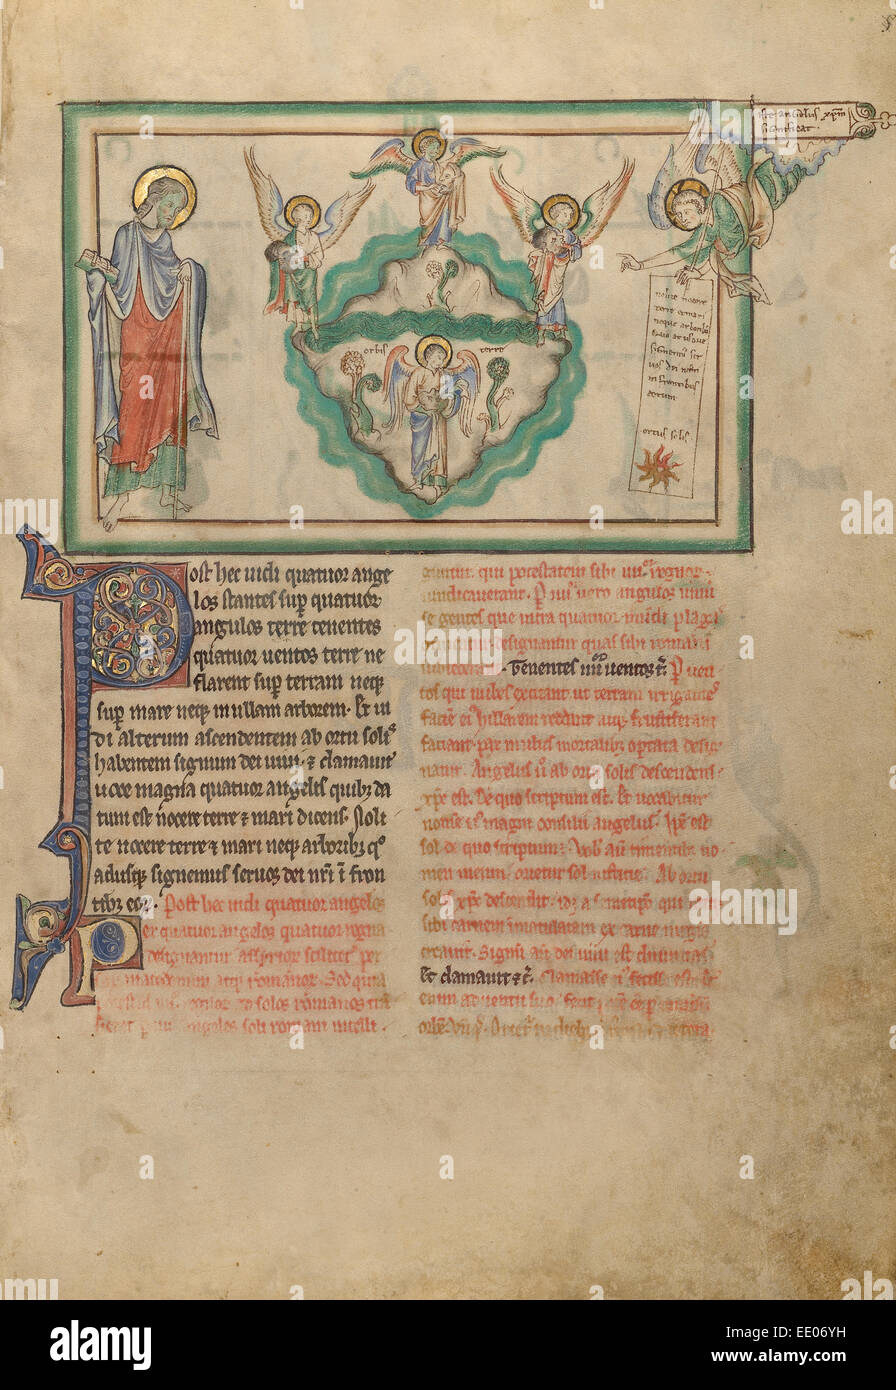 Engel halten die vier Winde und einem Engel bedeutet Christus; Unbekannt; London (wahrscheinlich), England, Europa; ca. 1255-1260 Stockfoto